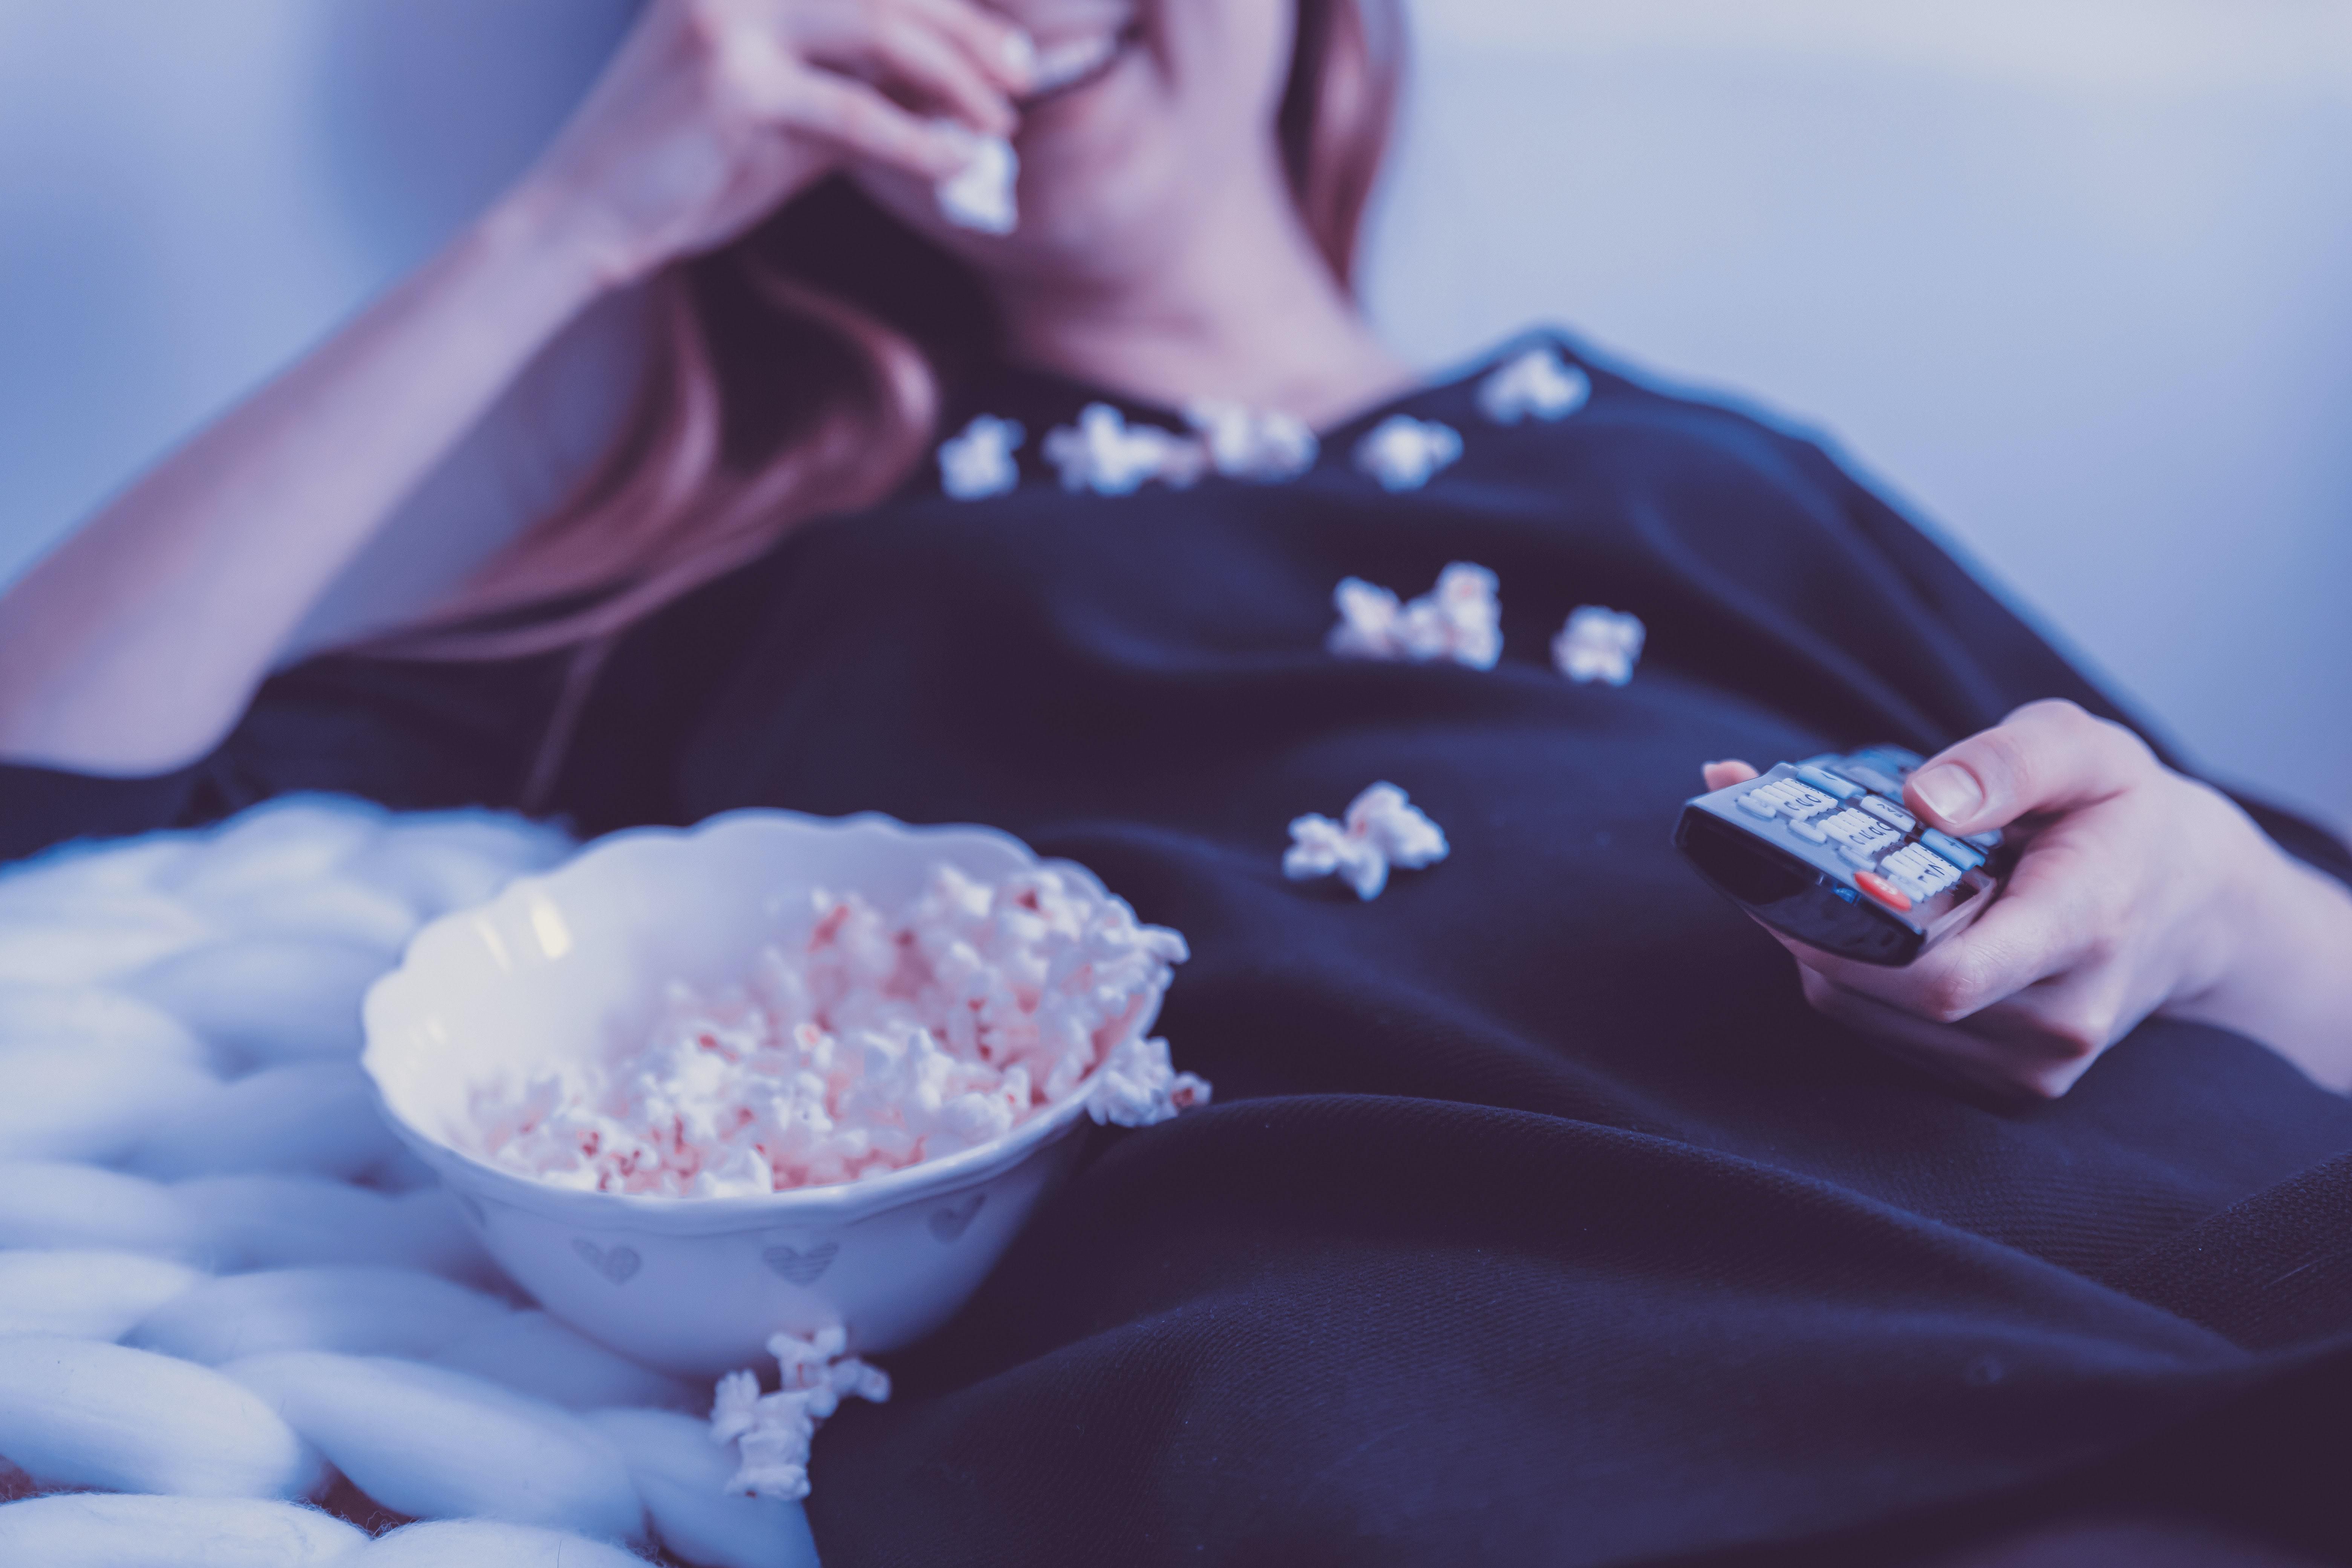 Fiatal lány nevet, miközben TV-t néz egy sötétkék felsőben, közben popcornt eszik